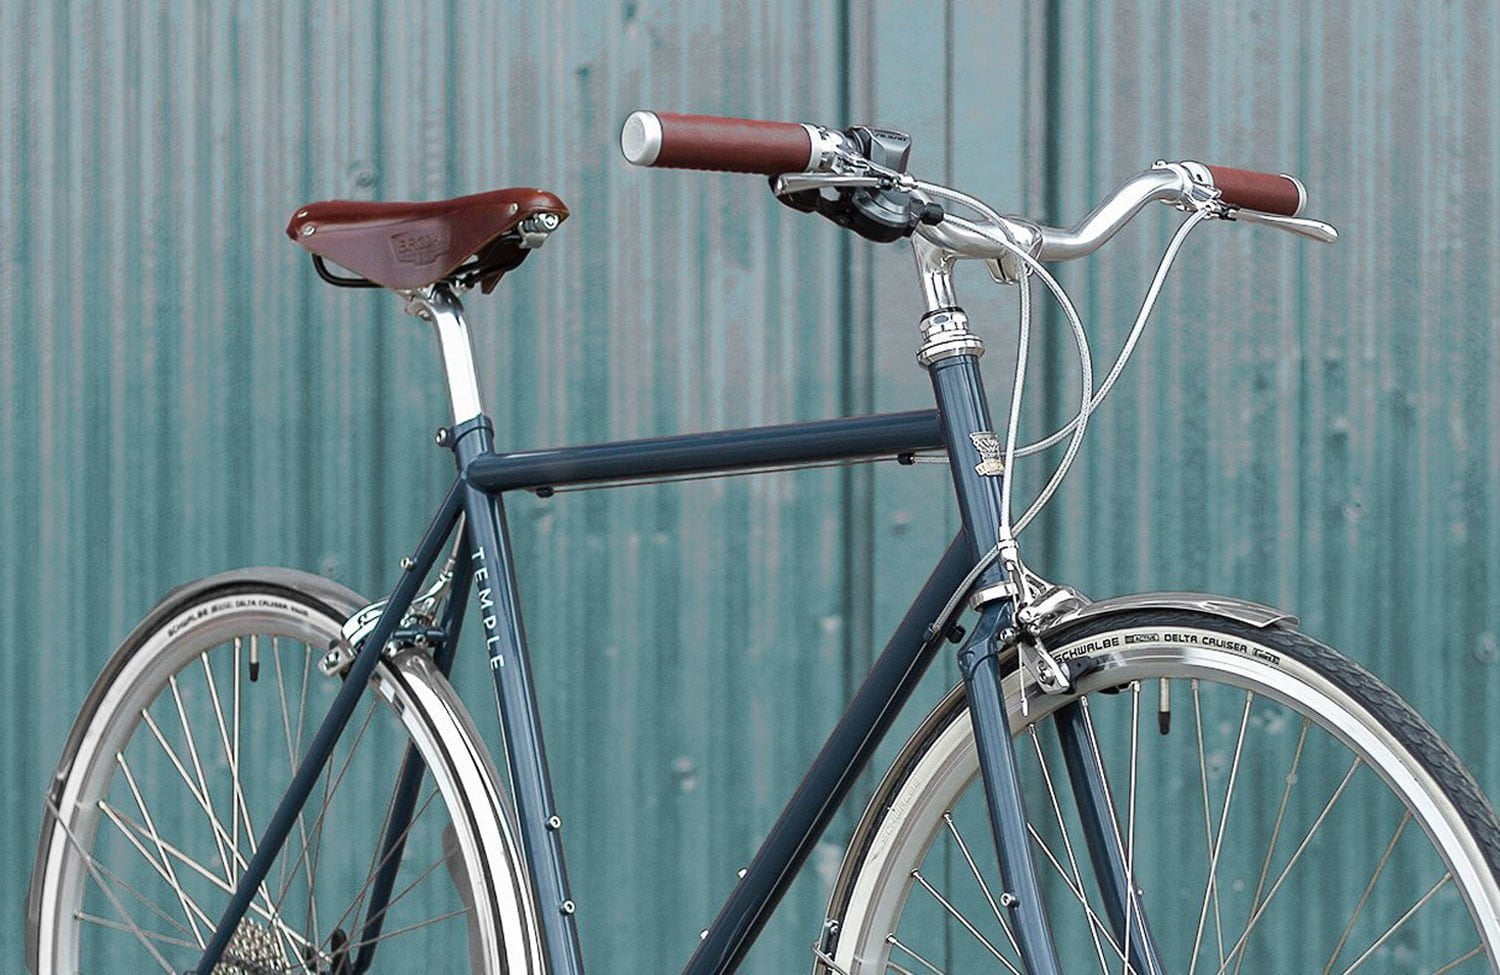 Temple Cycles: Moderne Stahlrahmen-Fahrräder mit klassischem Design ... - Temple Sycles Classic Design Urban Bikes 1500x975